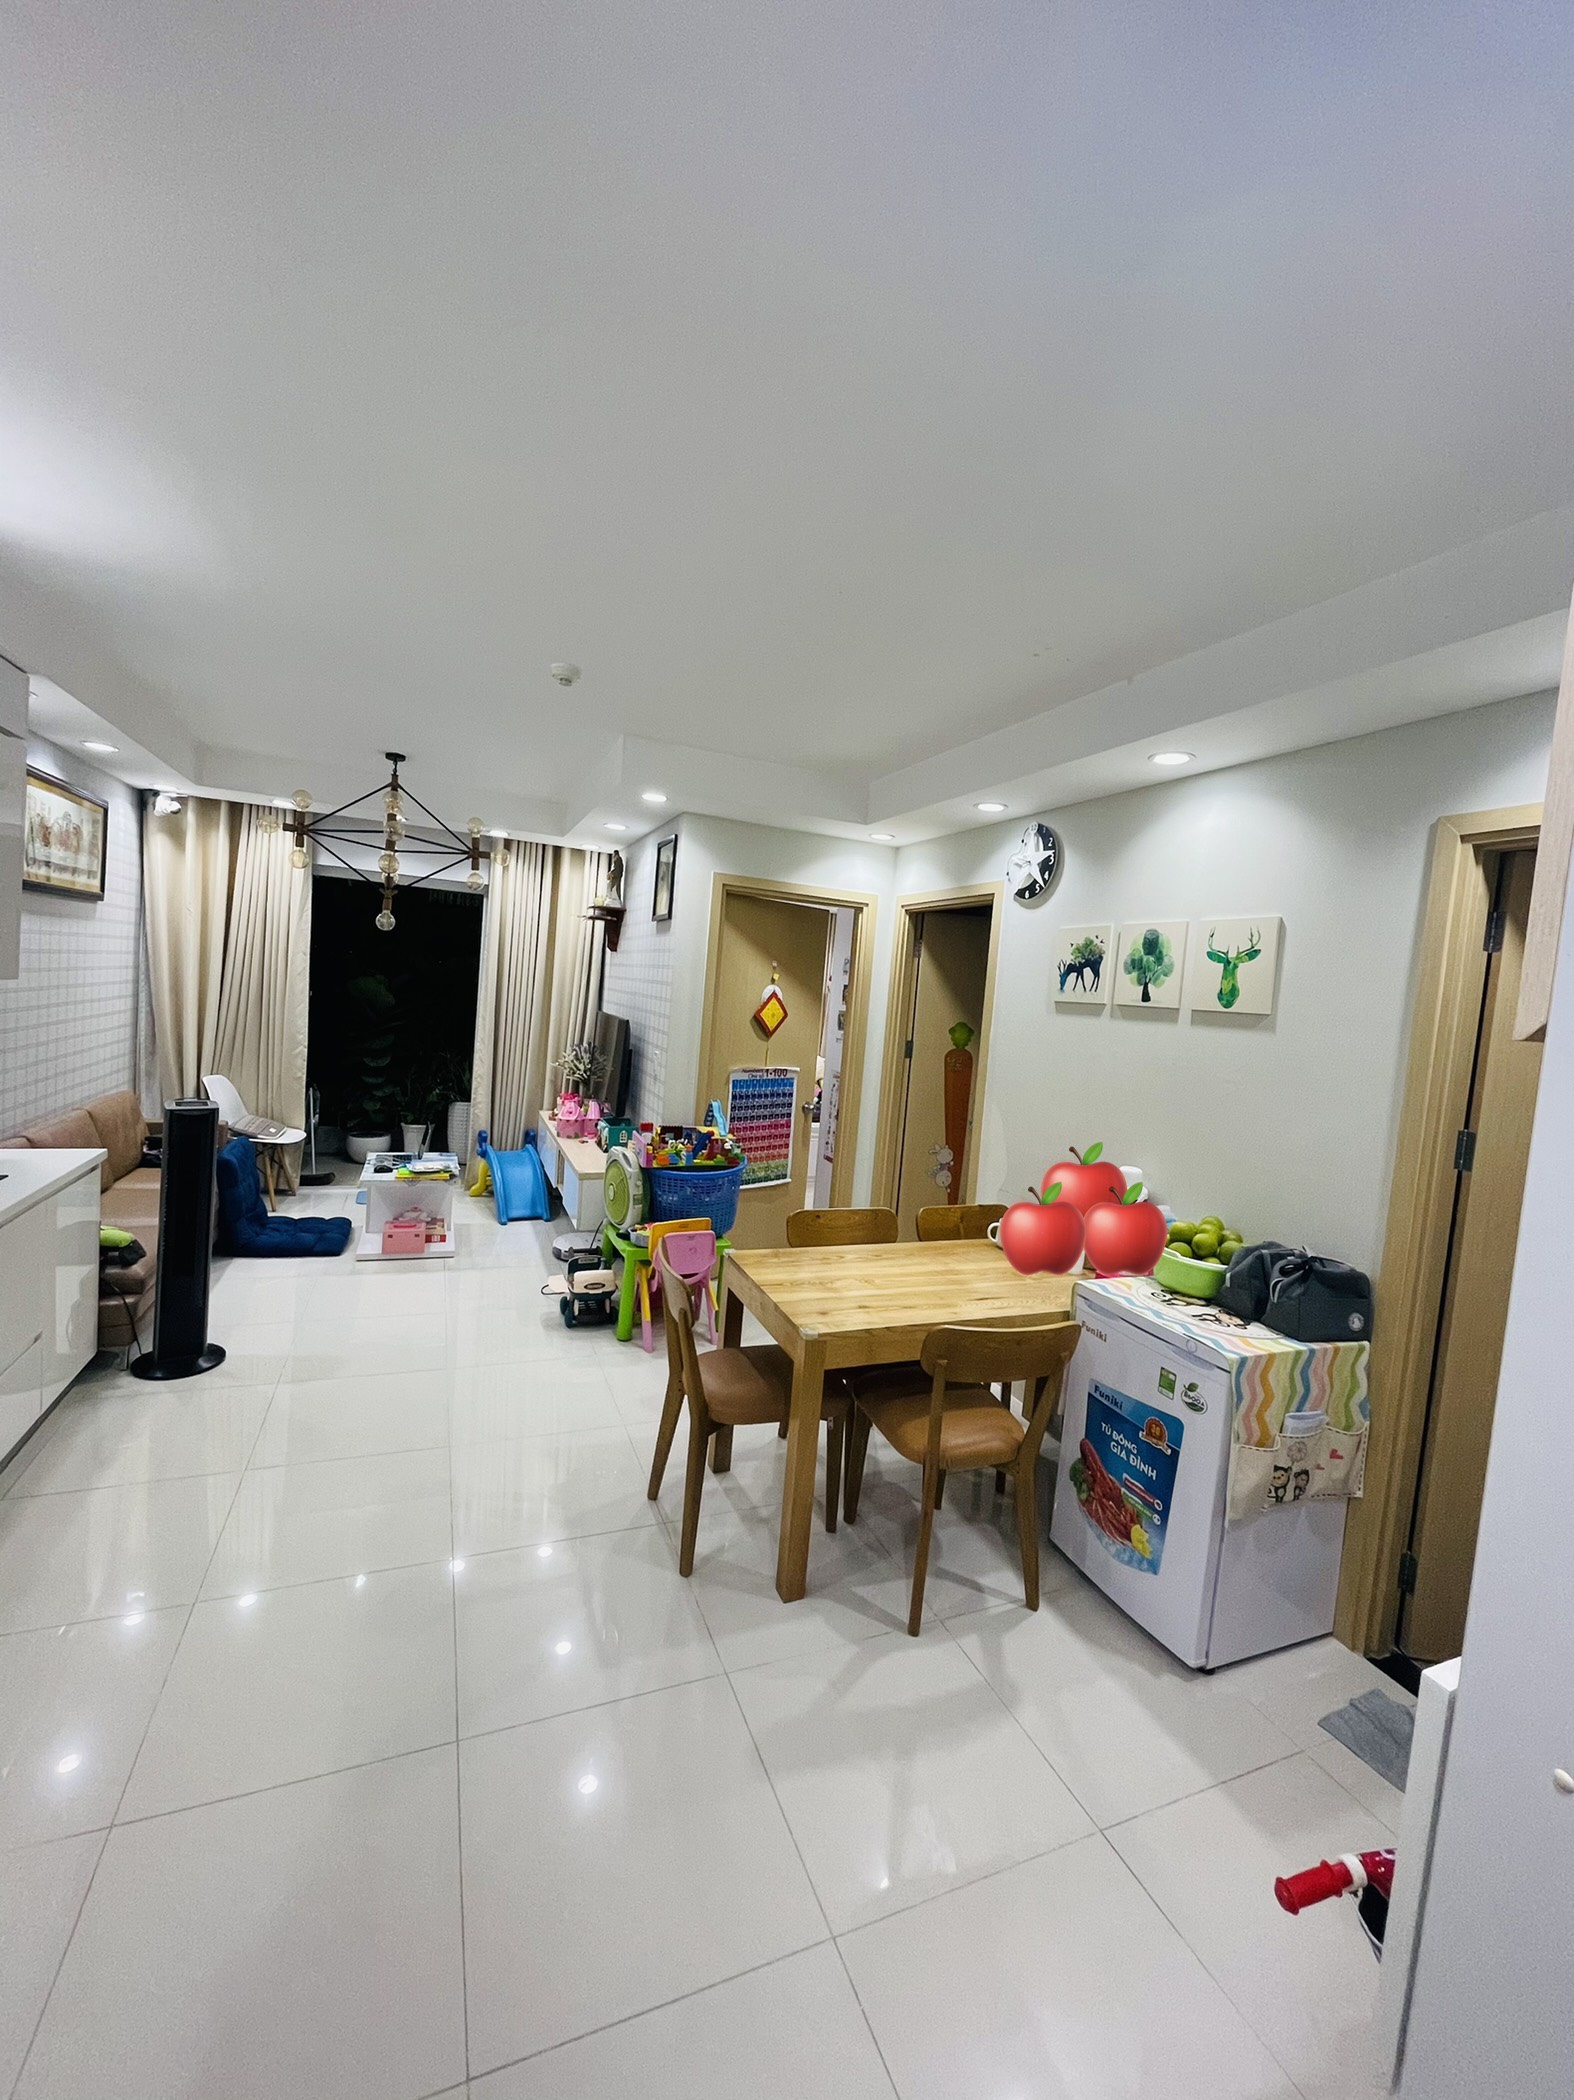 Cho thuê căn hộ An Gia Garden 2pn, quận Tân Phú, full nội thất, giá 9tr5. Liên hệ 0706699393